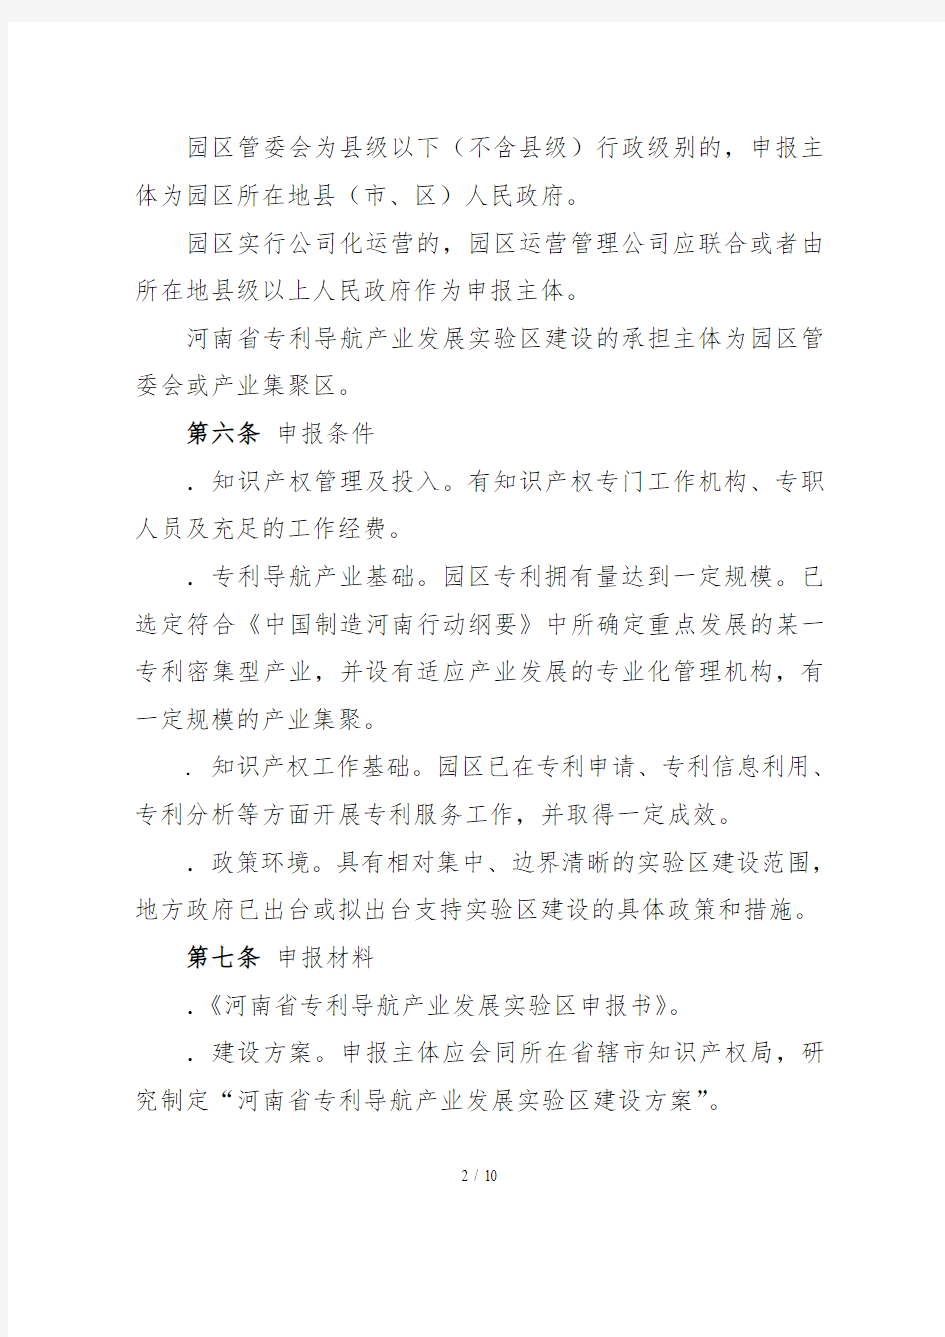 河南省专利导航产业发展实验区管理办法